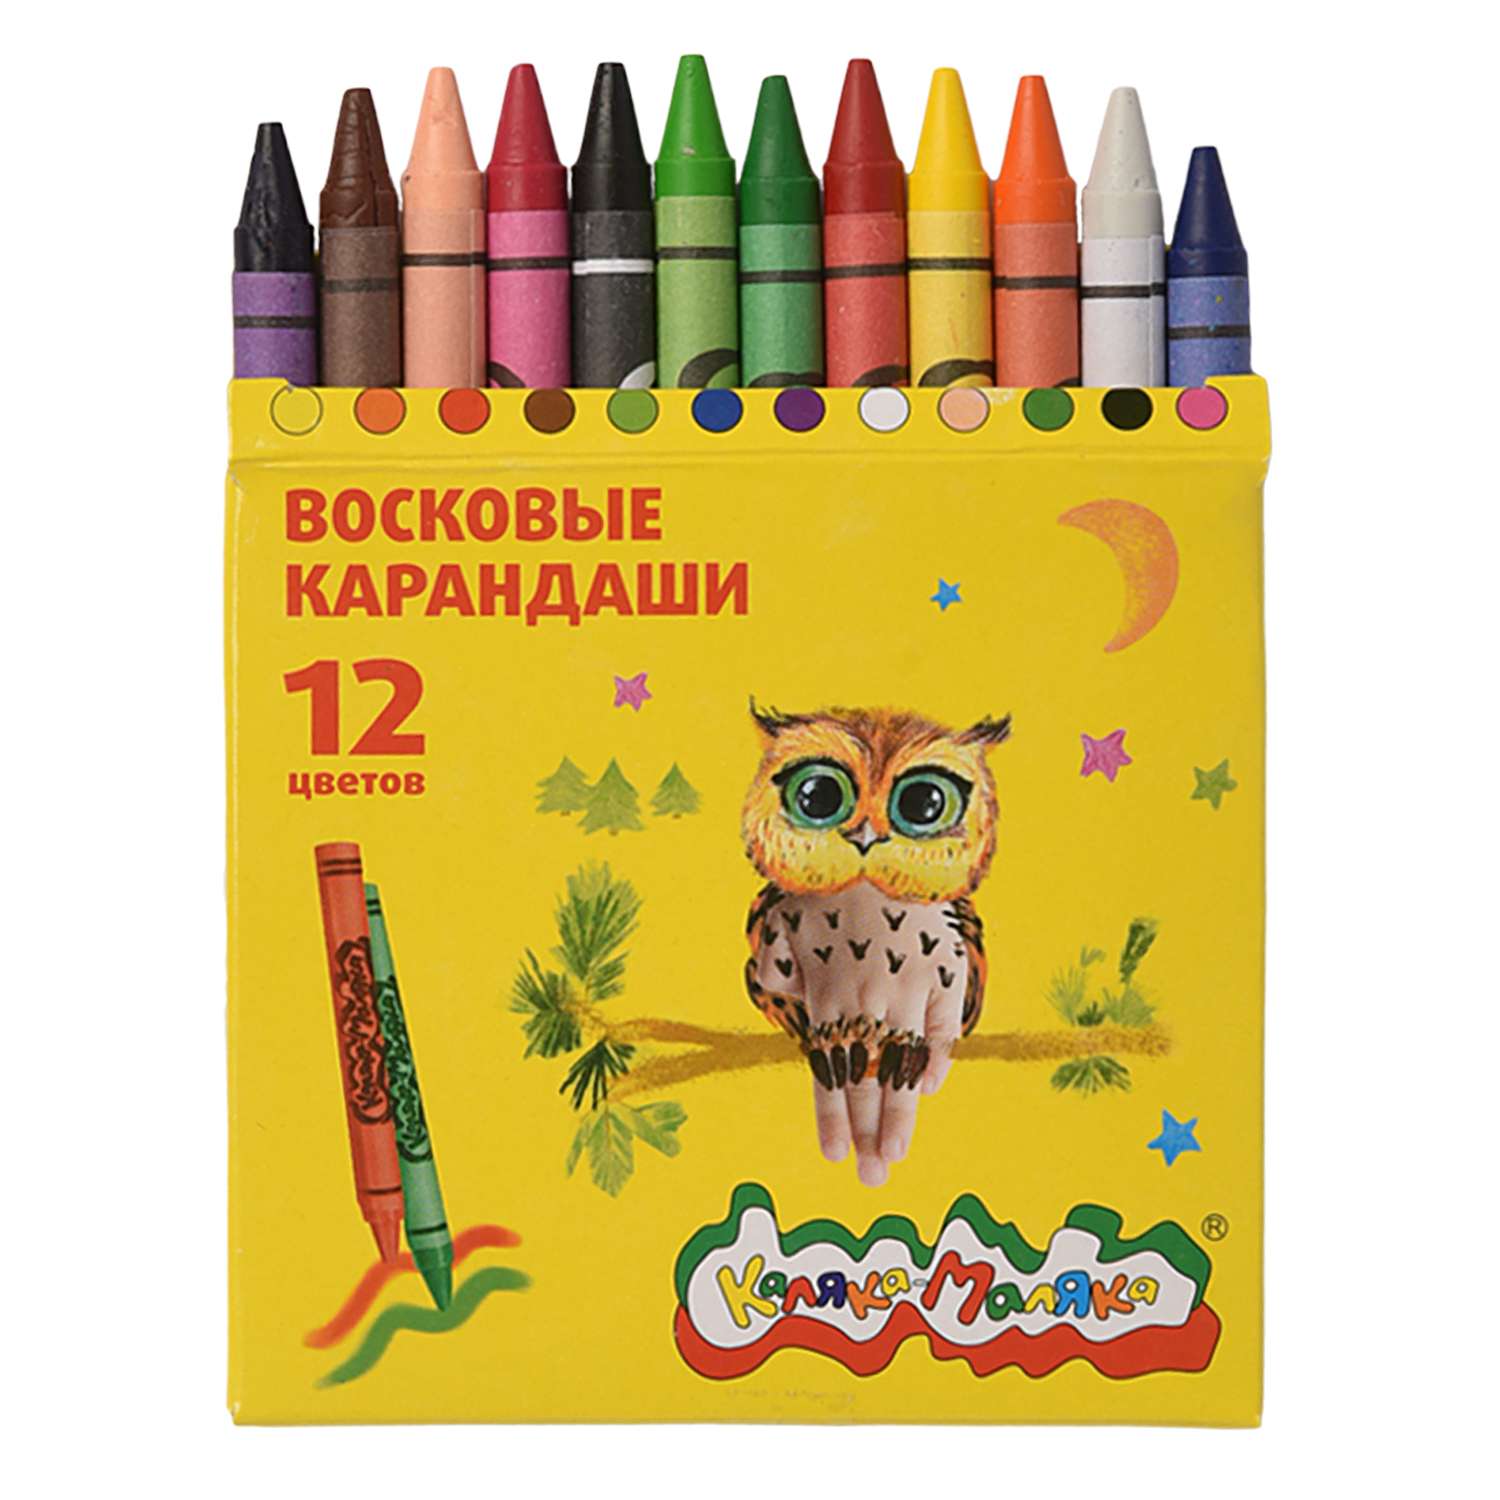 Восковые карандаши Каляка-Маляка 12 цветов круглые - фото 3